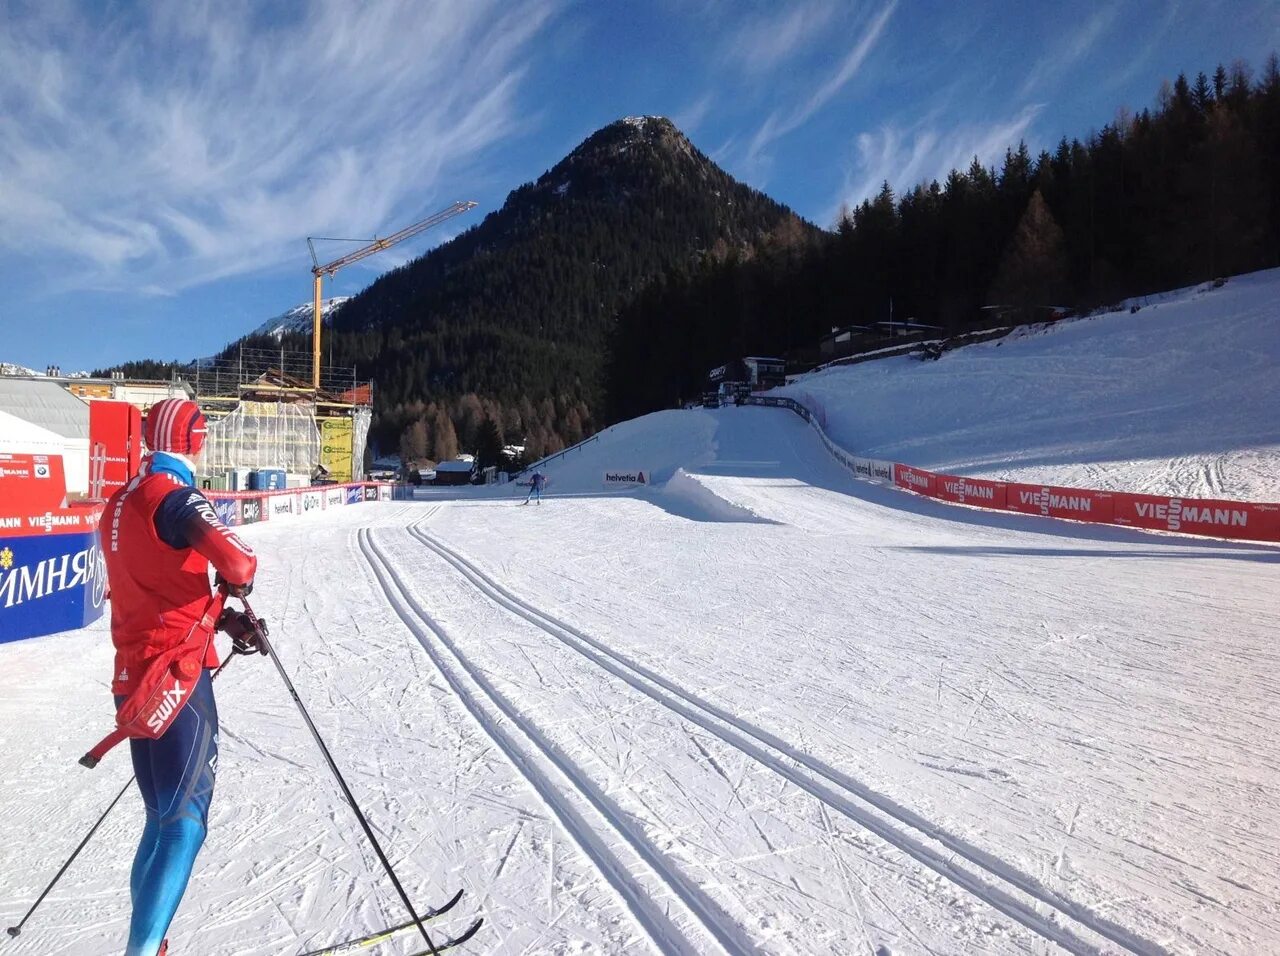 Трасса лыжных гонок состоит из 4 участков. Давос Швейцария лыжные гонки. Давос Швейцария лыжная трасса. Подготовка трассы для лыжных гонок. Поле для лыжного спорта.